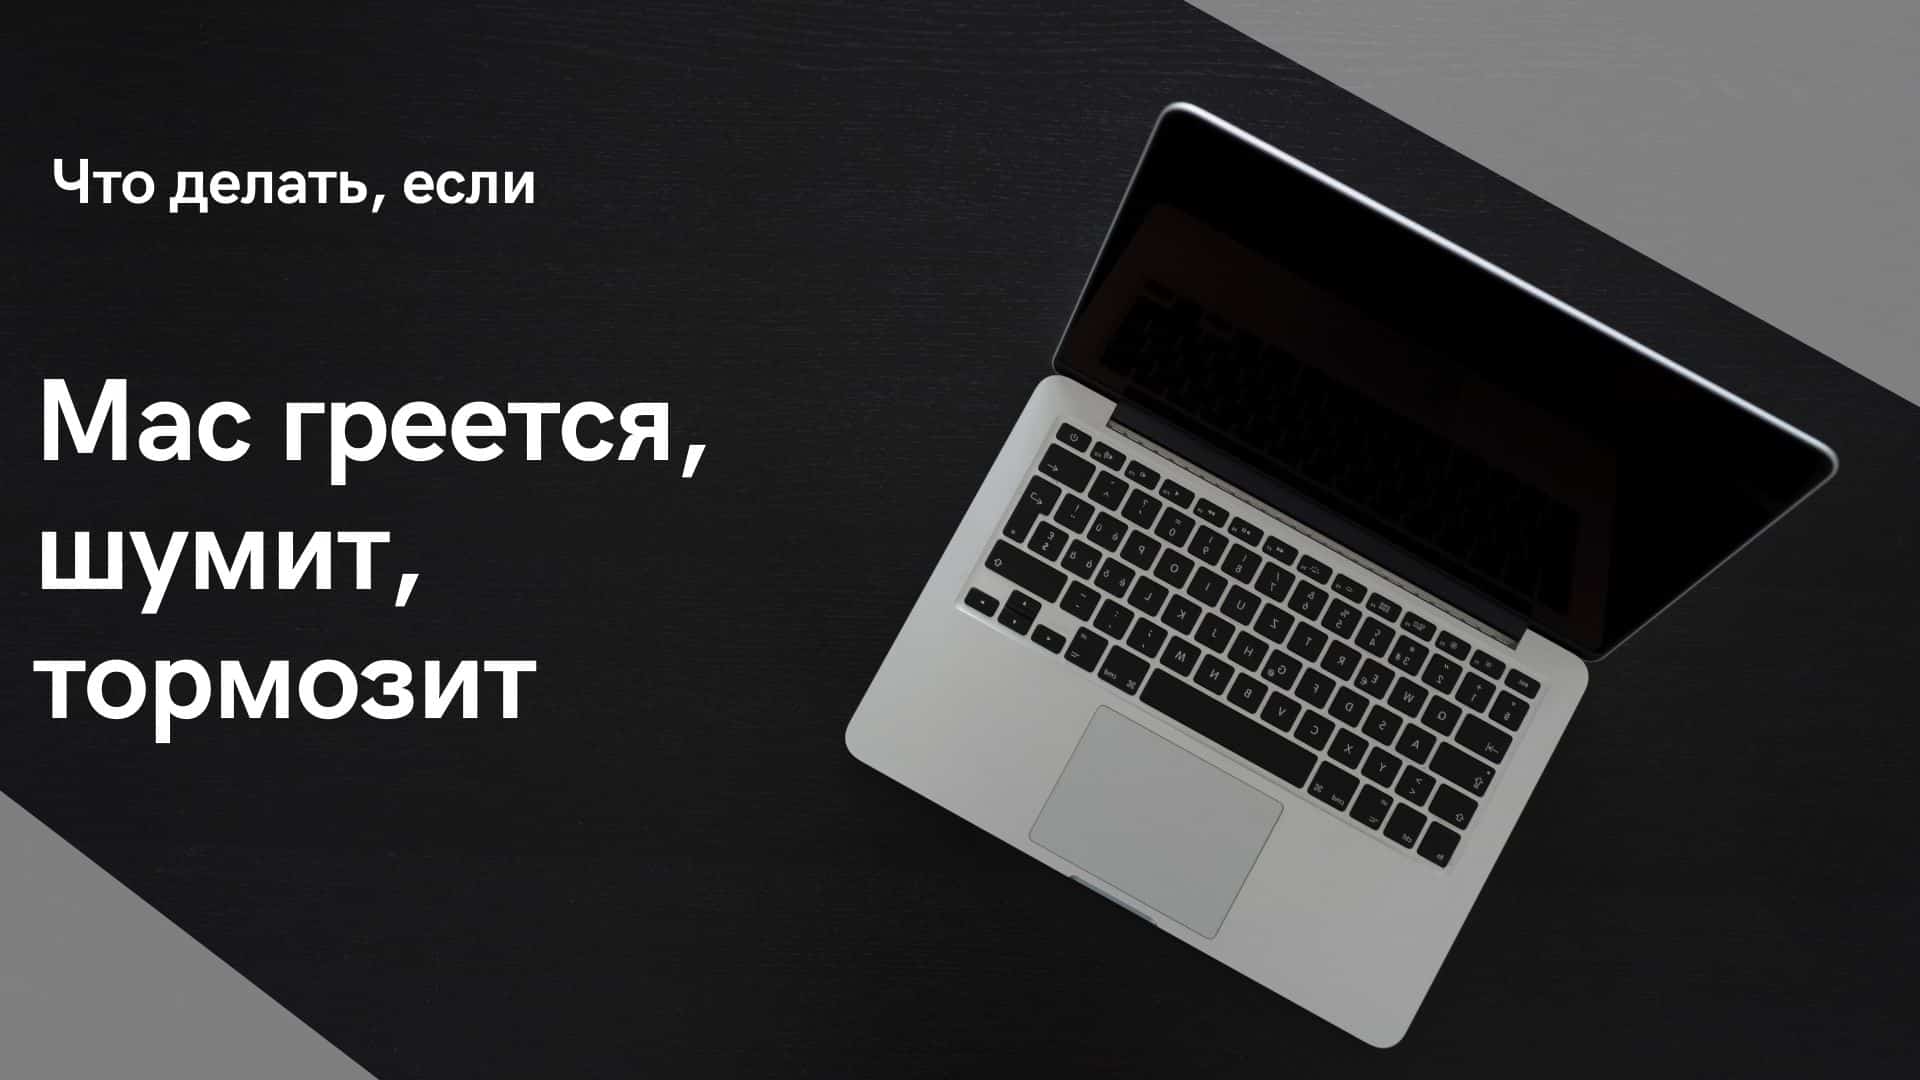 Сильно греется ноутбук: что делать?| ichip.ru